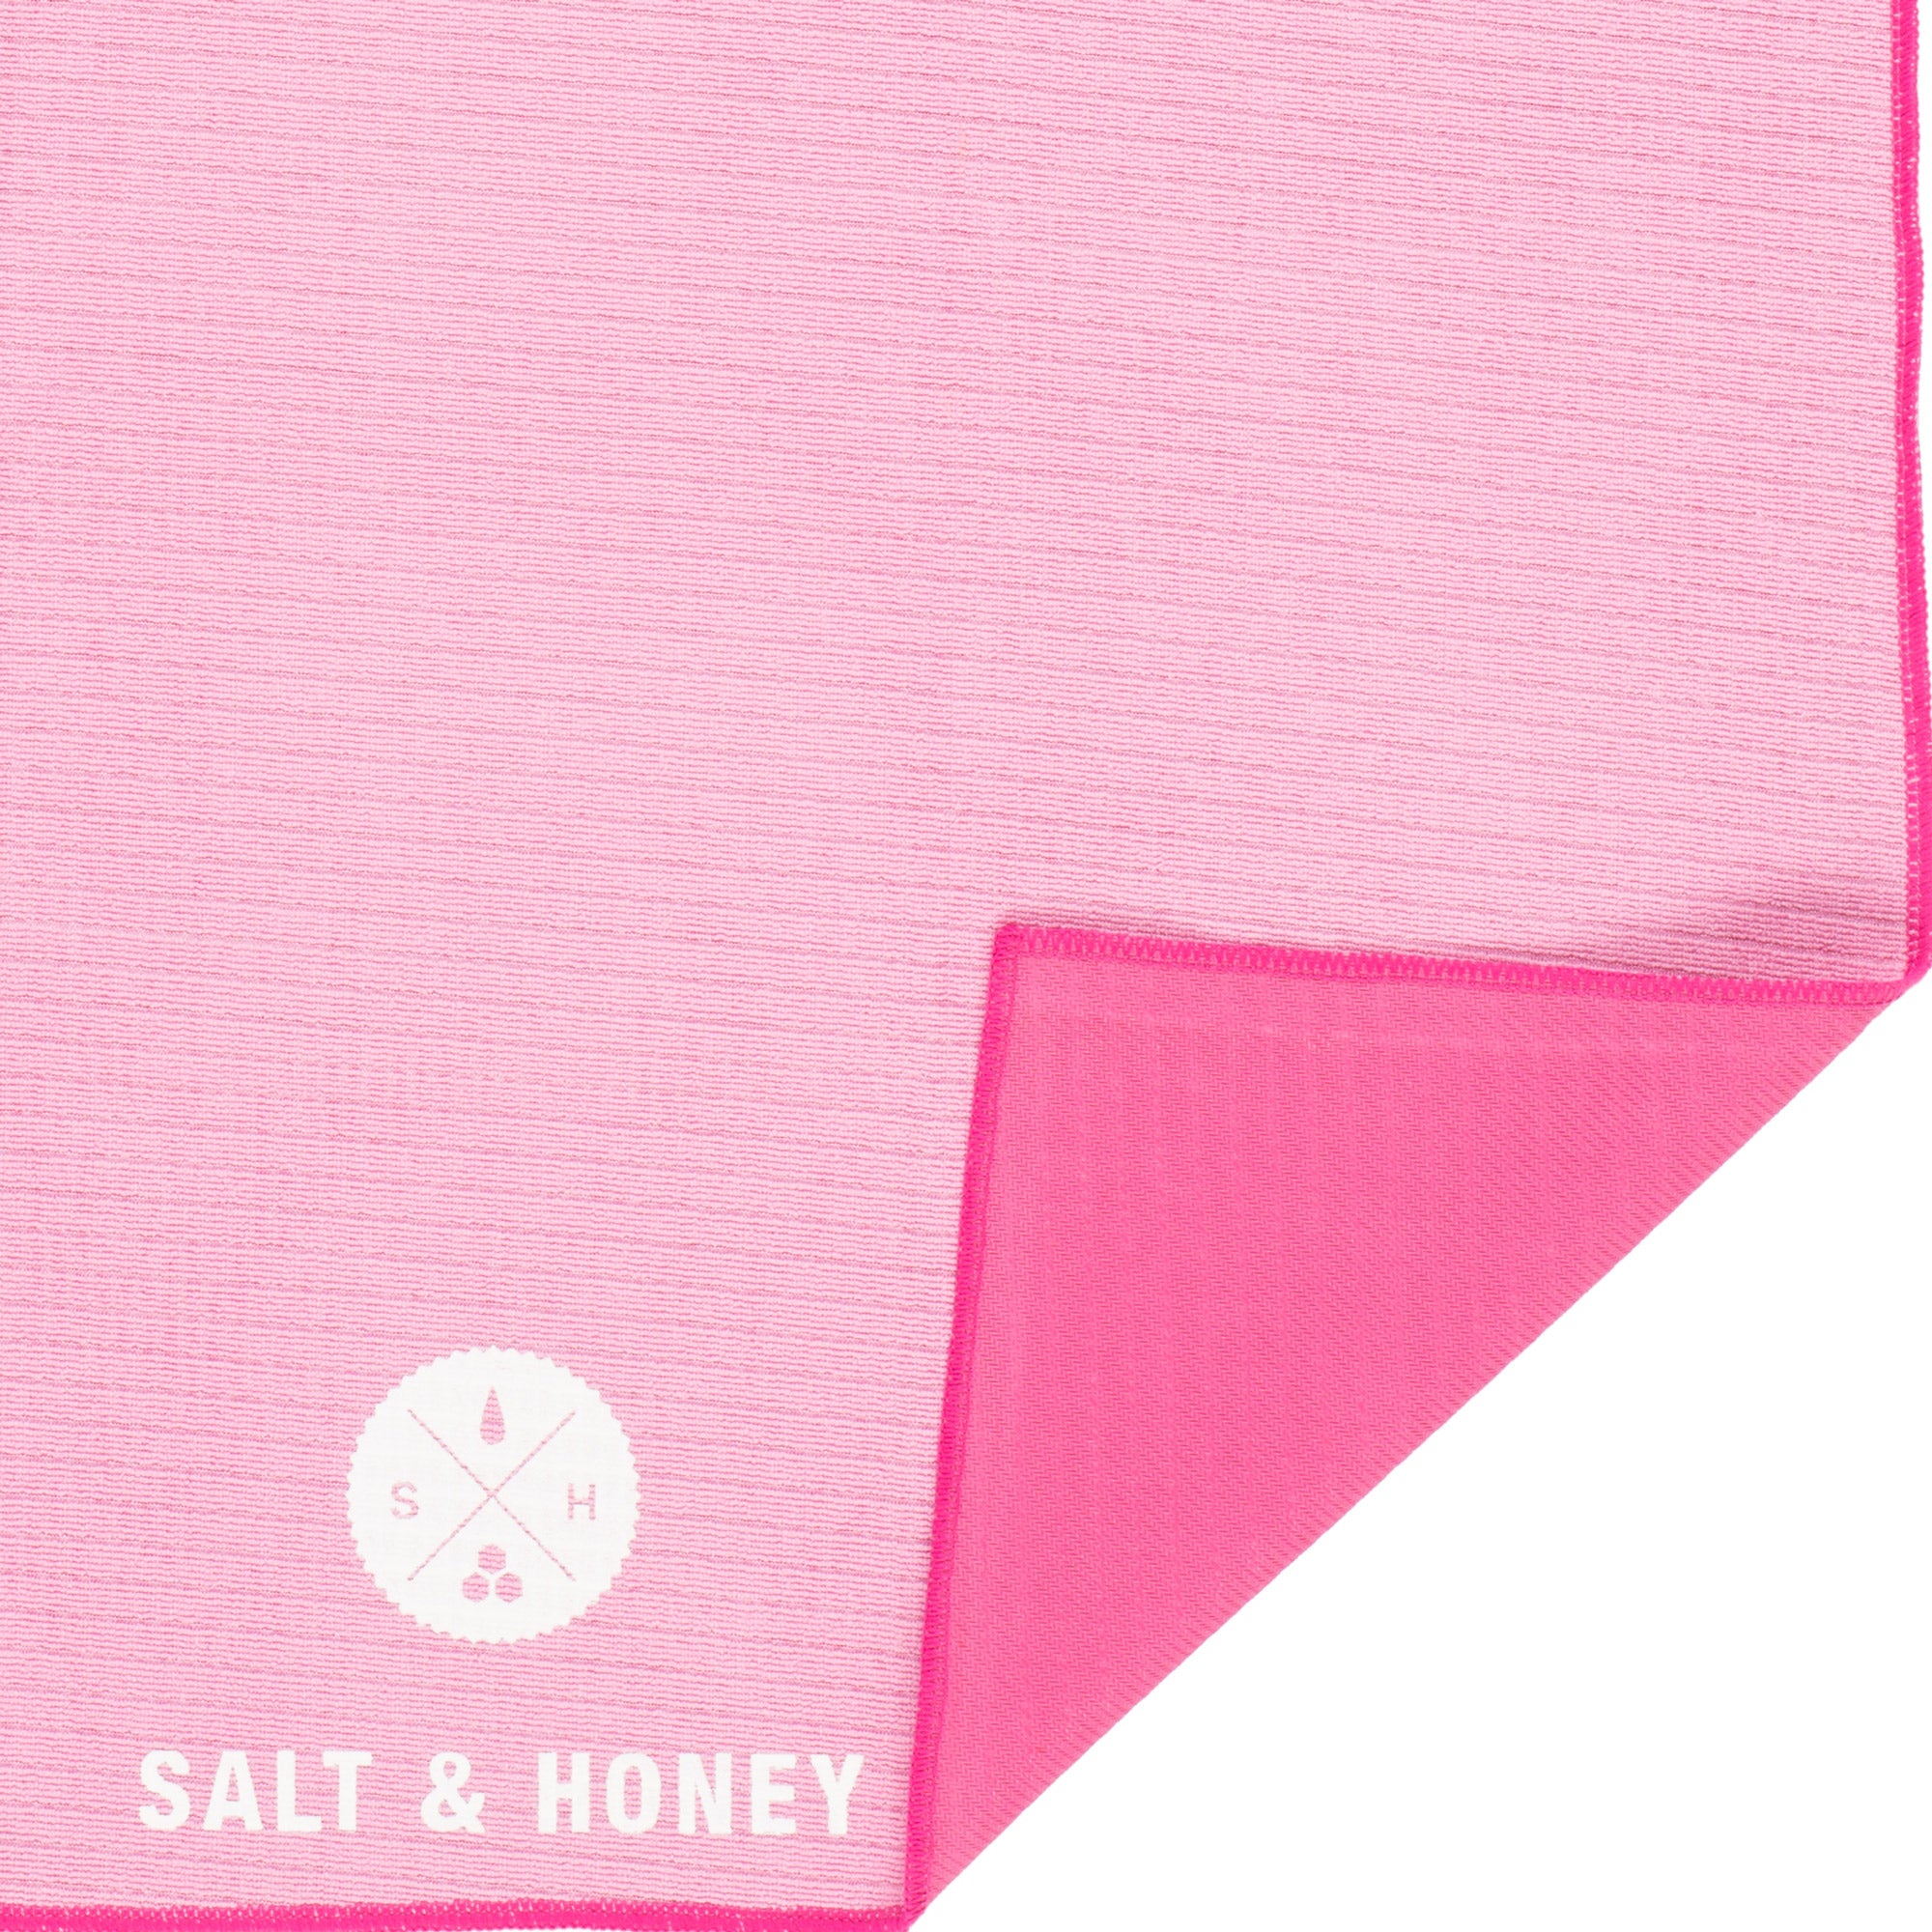 Salt & Honey Non-Slip Pilates Reformer Towel